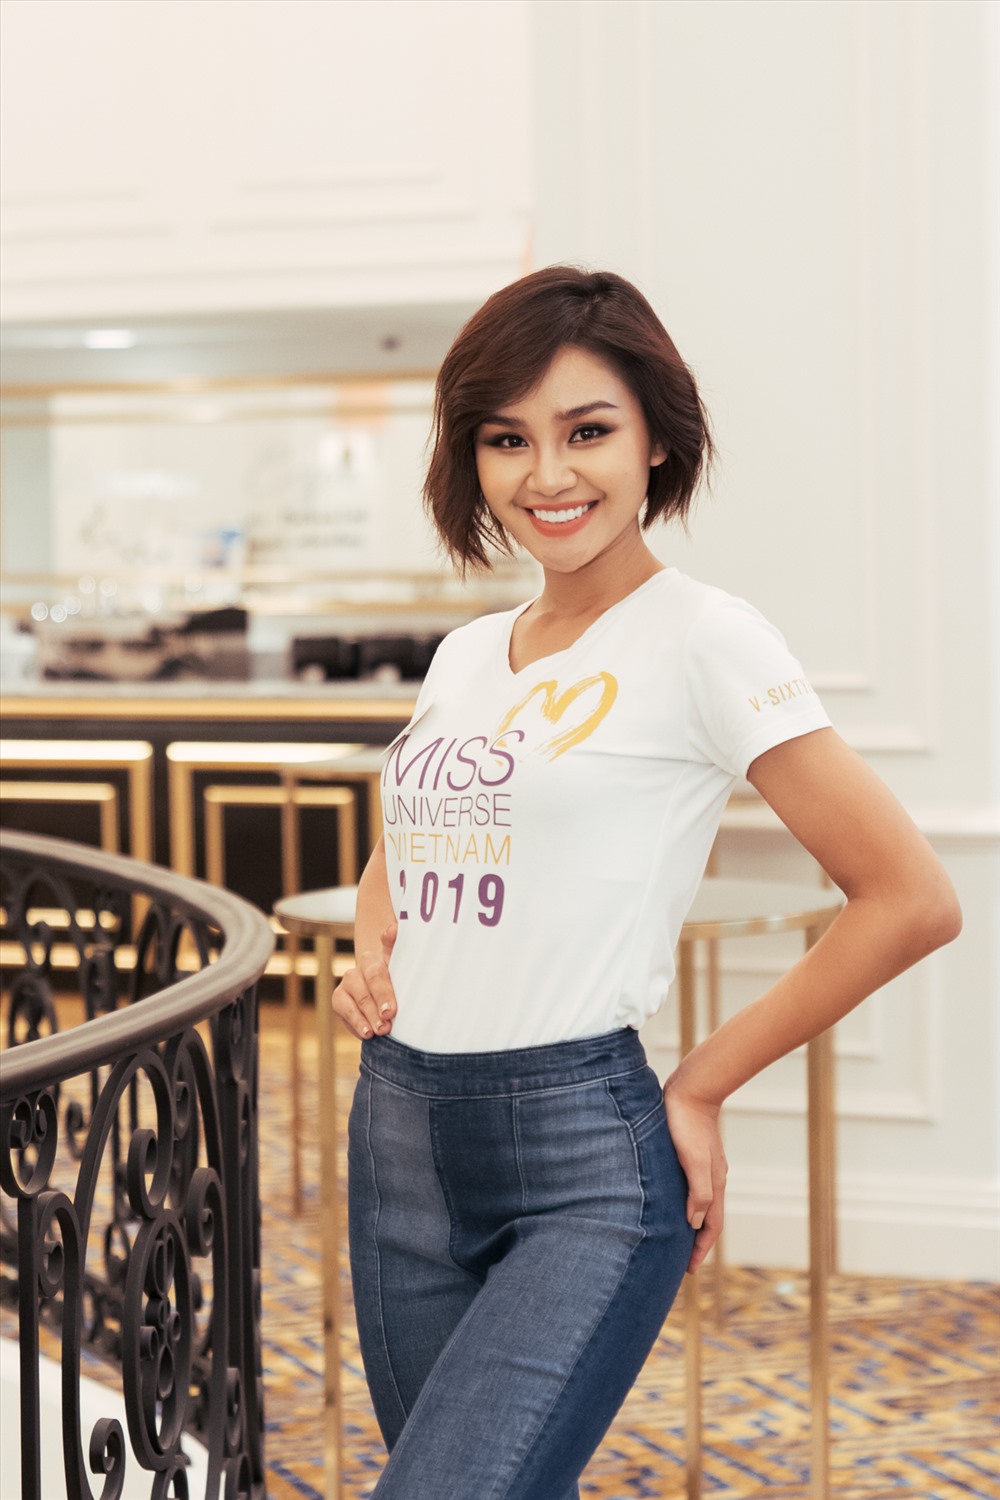 Thí sinh Lê Thu Trang được coi là “bản sao” của Hoa hậu H'Hen Niê. Ảnh: MUVN.